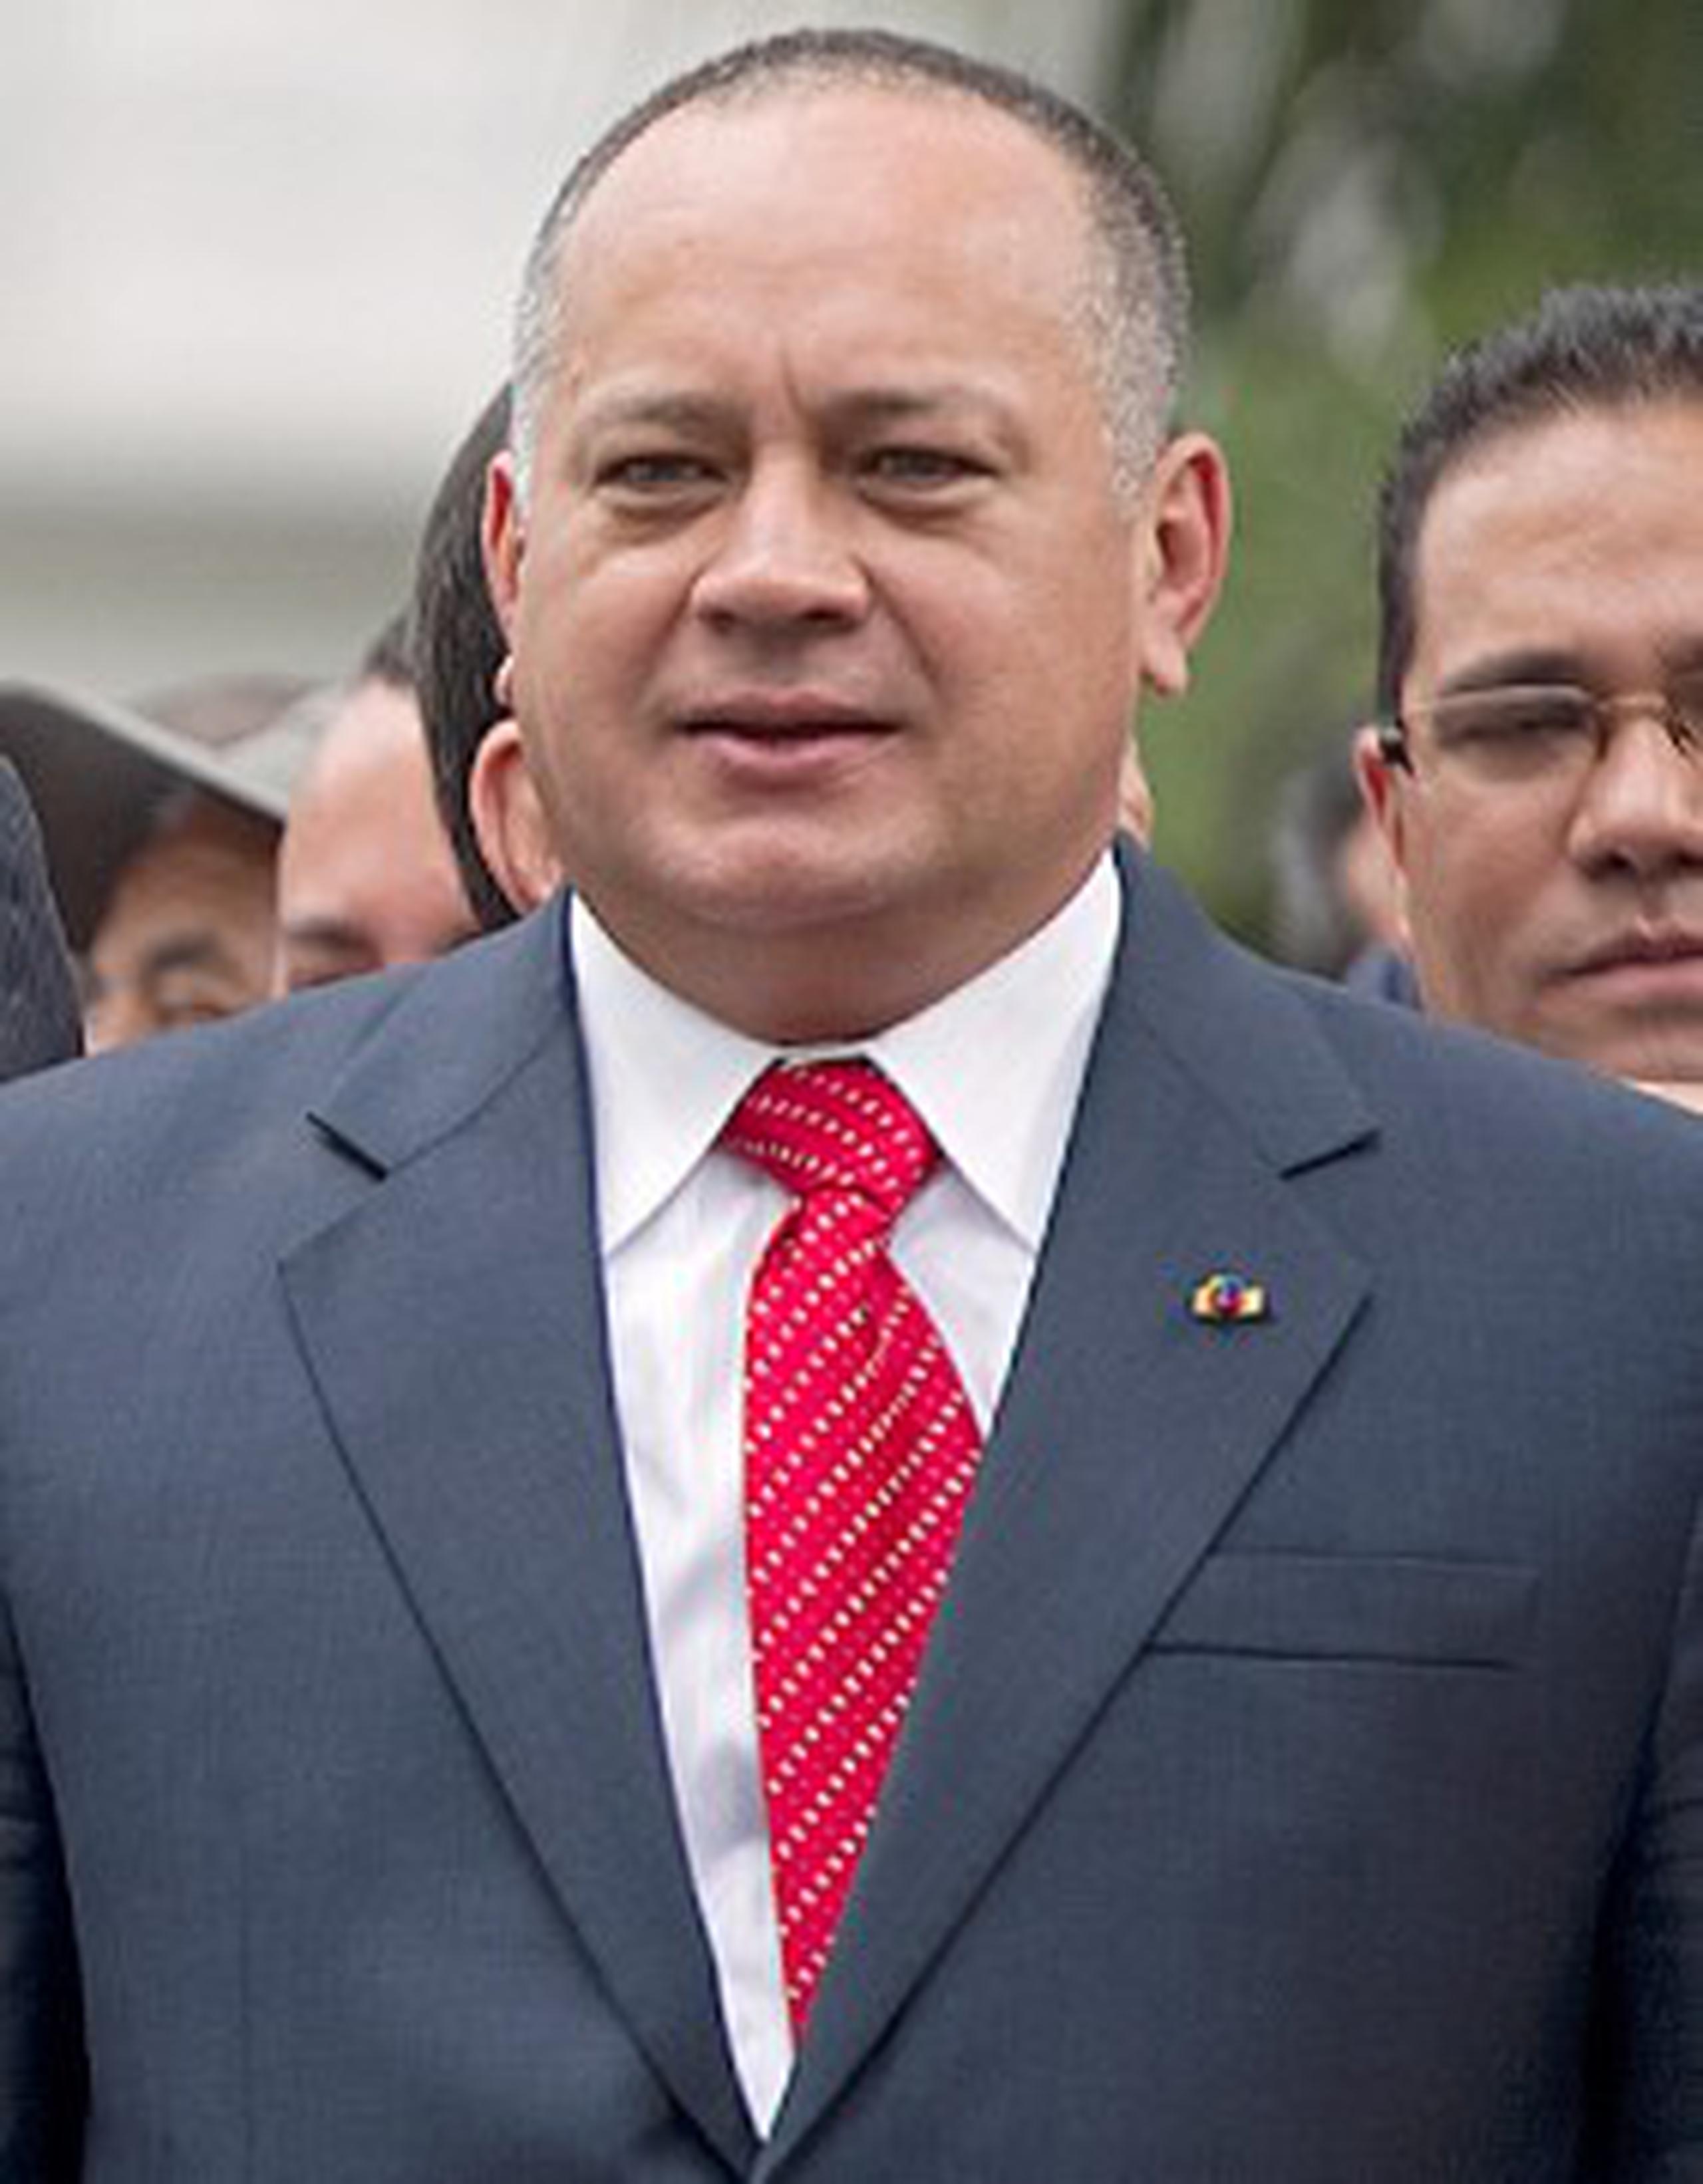 El reelegido responsable parlamentario, Diosdado Cabello, subrayó que Chávez "disfruta de un permiso de acuerdo con la Constitución". (AFP/Juan Barreto)